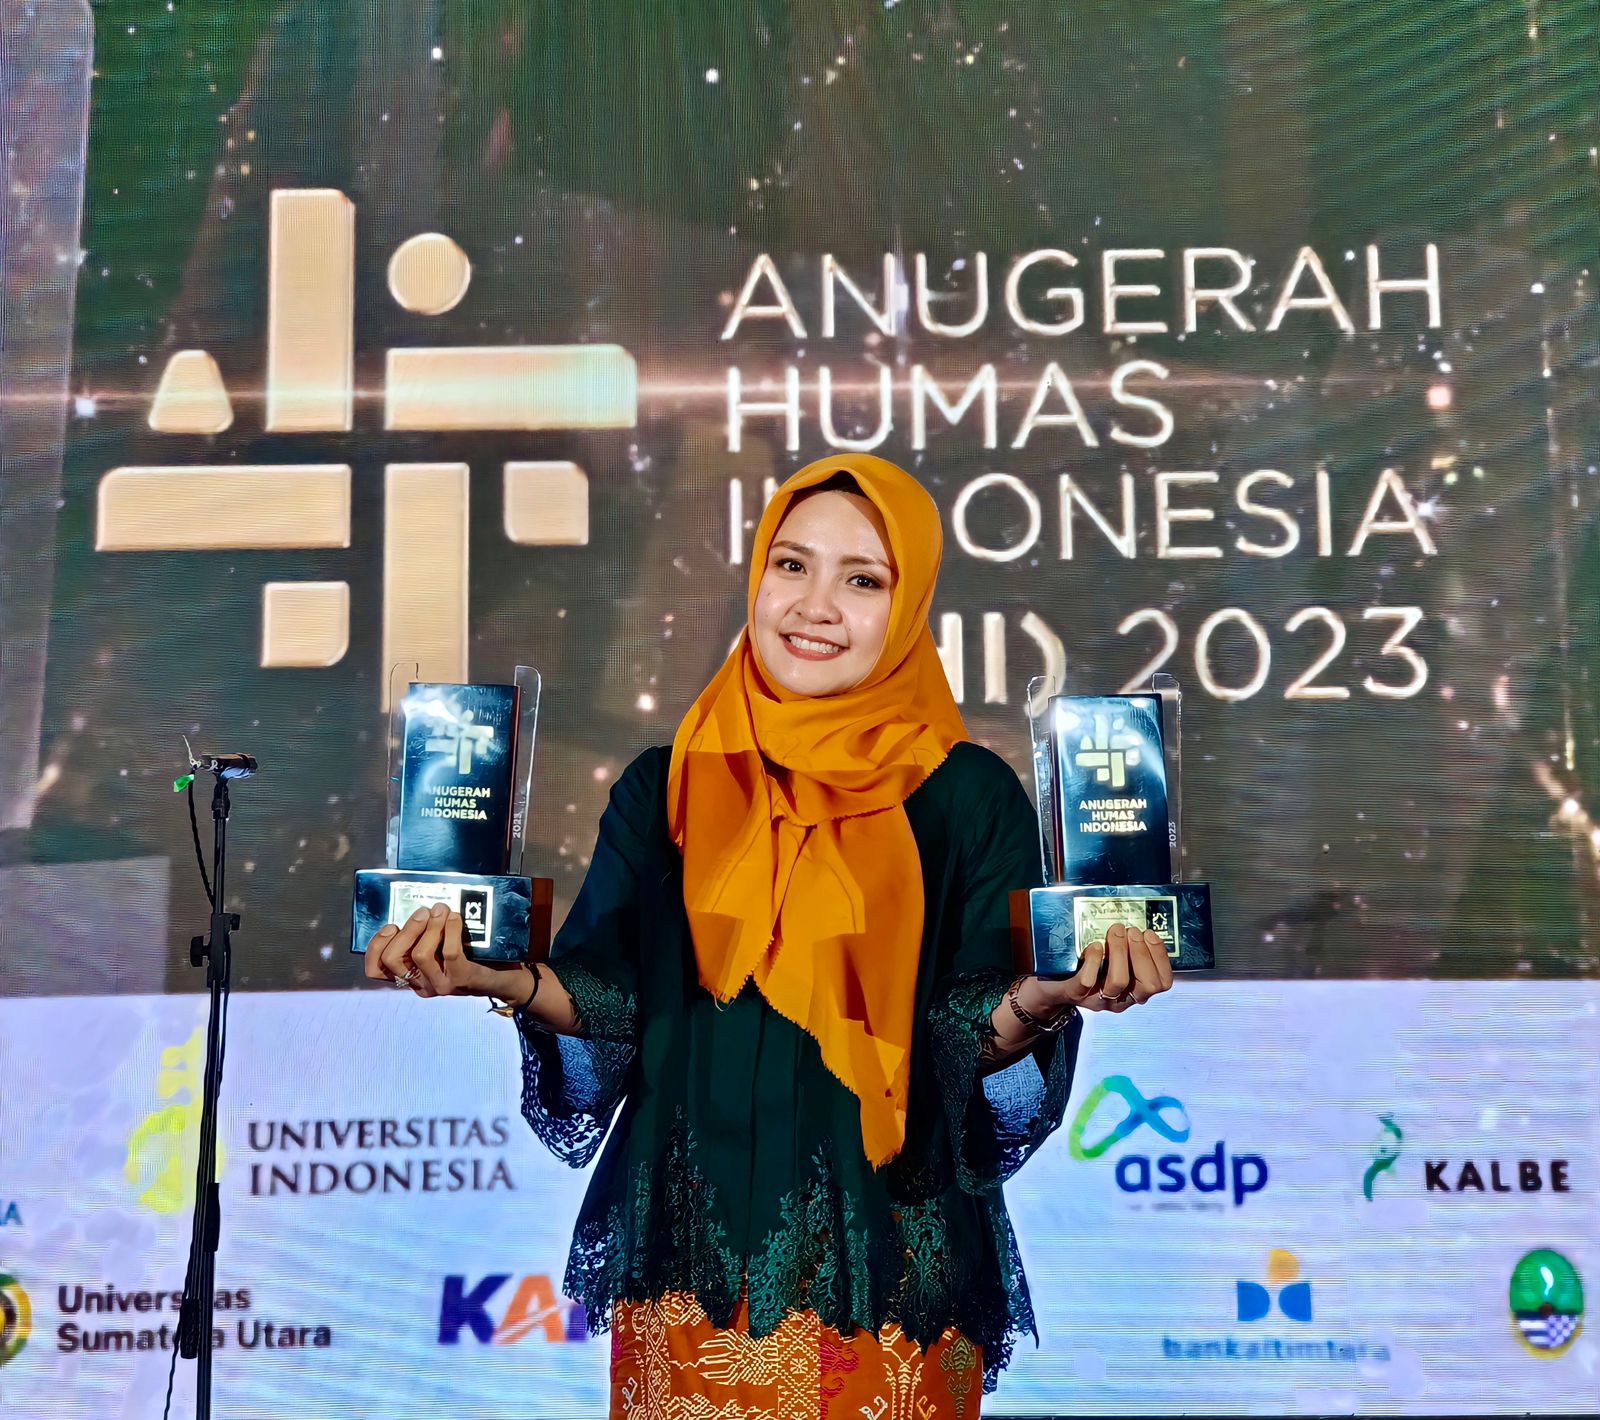 Teks foto: Berita Sore/ist Kepala Humas, Promosi dan Protokoler Amalia Meutia, MPsi, Psikolog ketika menerima penghargaan di ajang Anugerah Humas Indonesia (AHI) 2023 di Semarang.